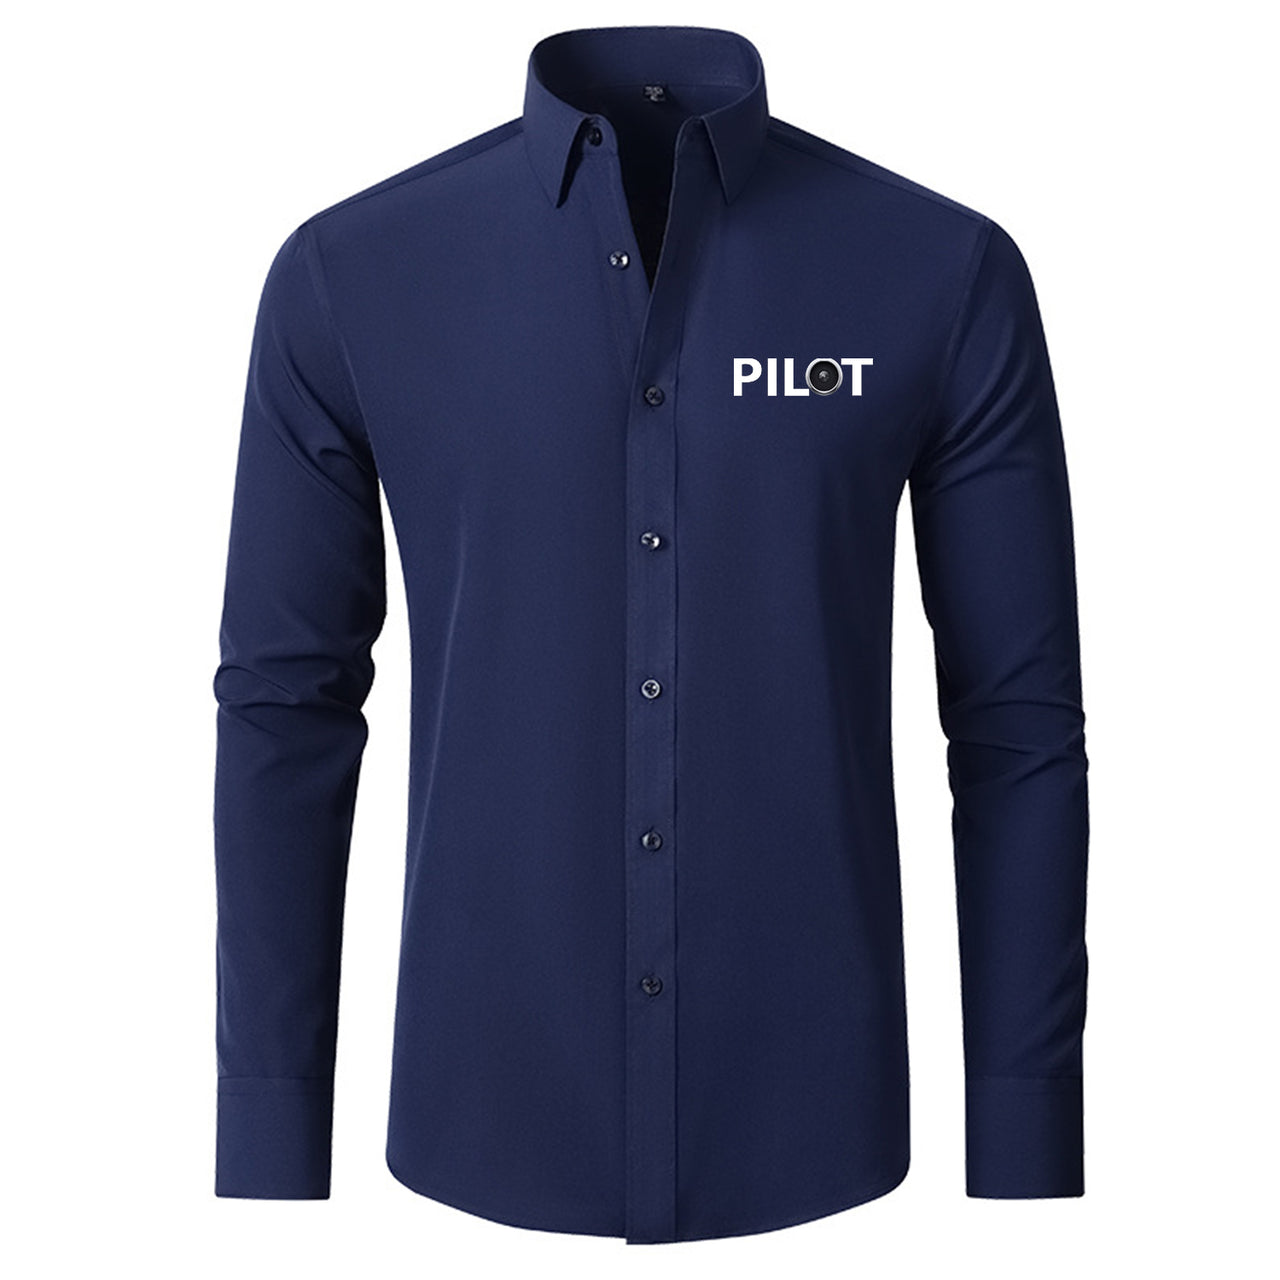 Pilot & Jet Engine Designed Long Sleeve Shirts